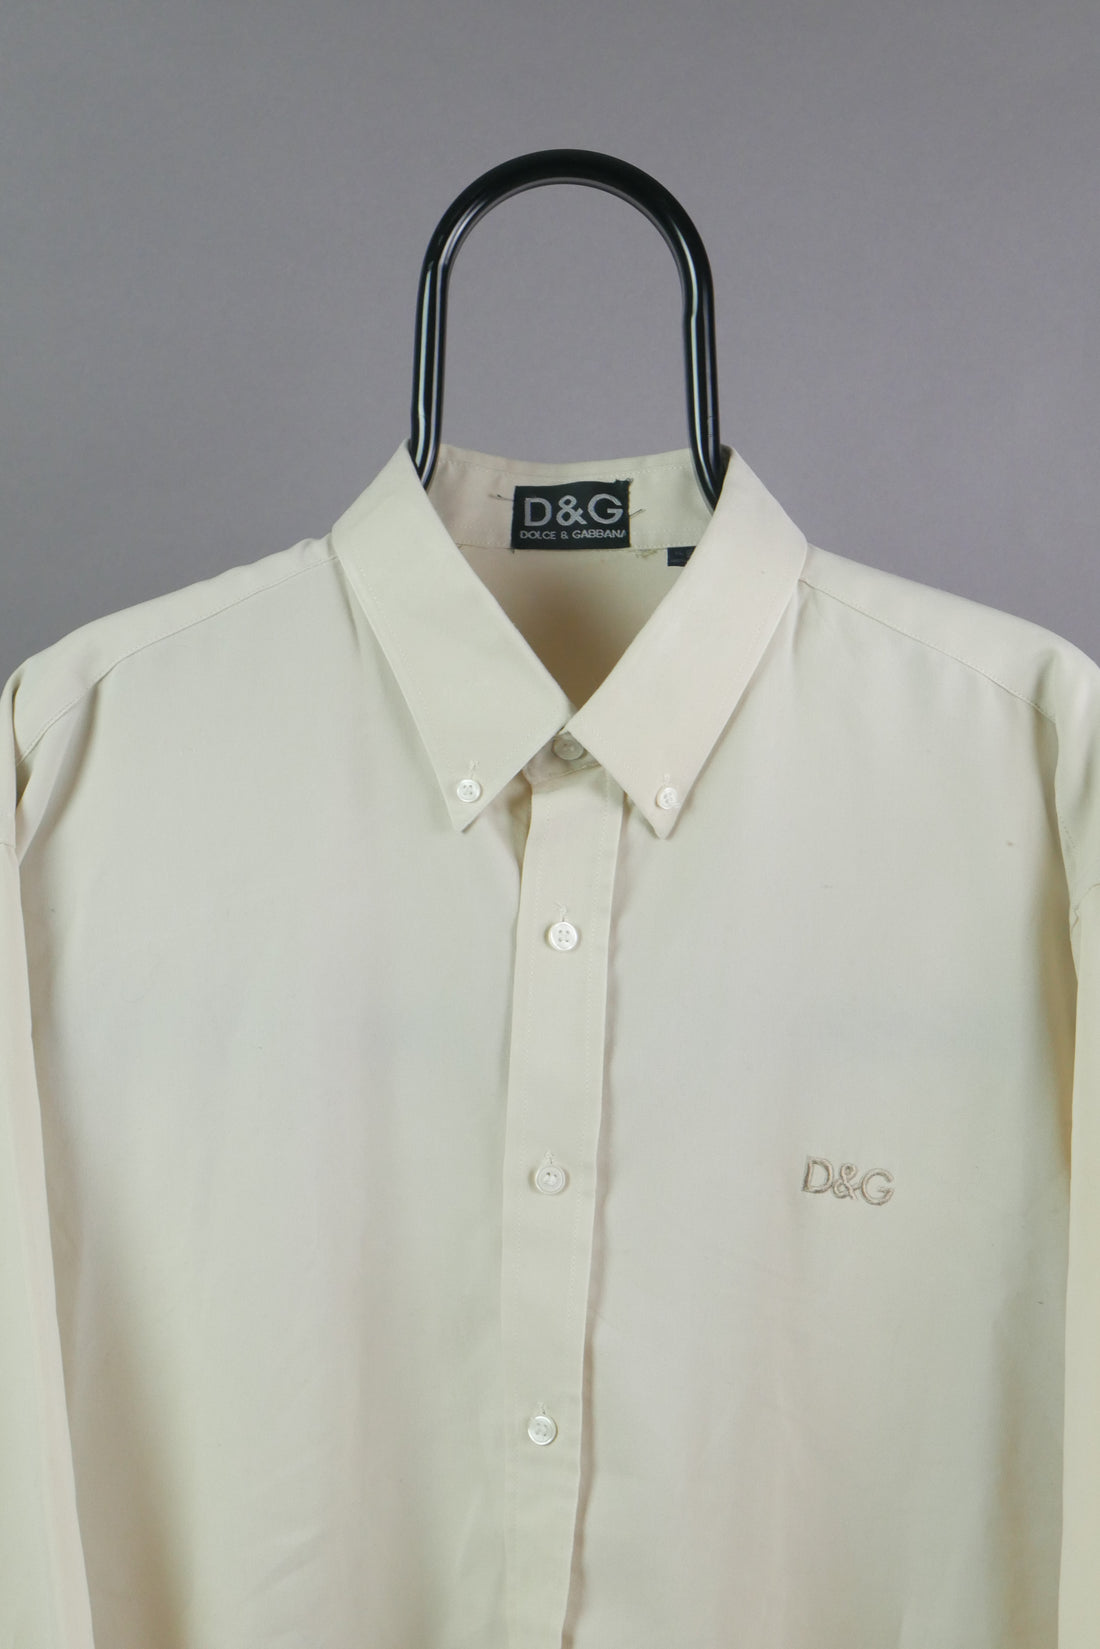 The Bootleg Dolce & Gabbana D&G Long Sleeve Shirt (2XL)